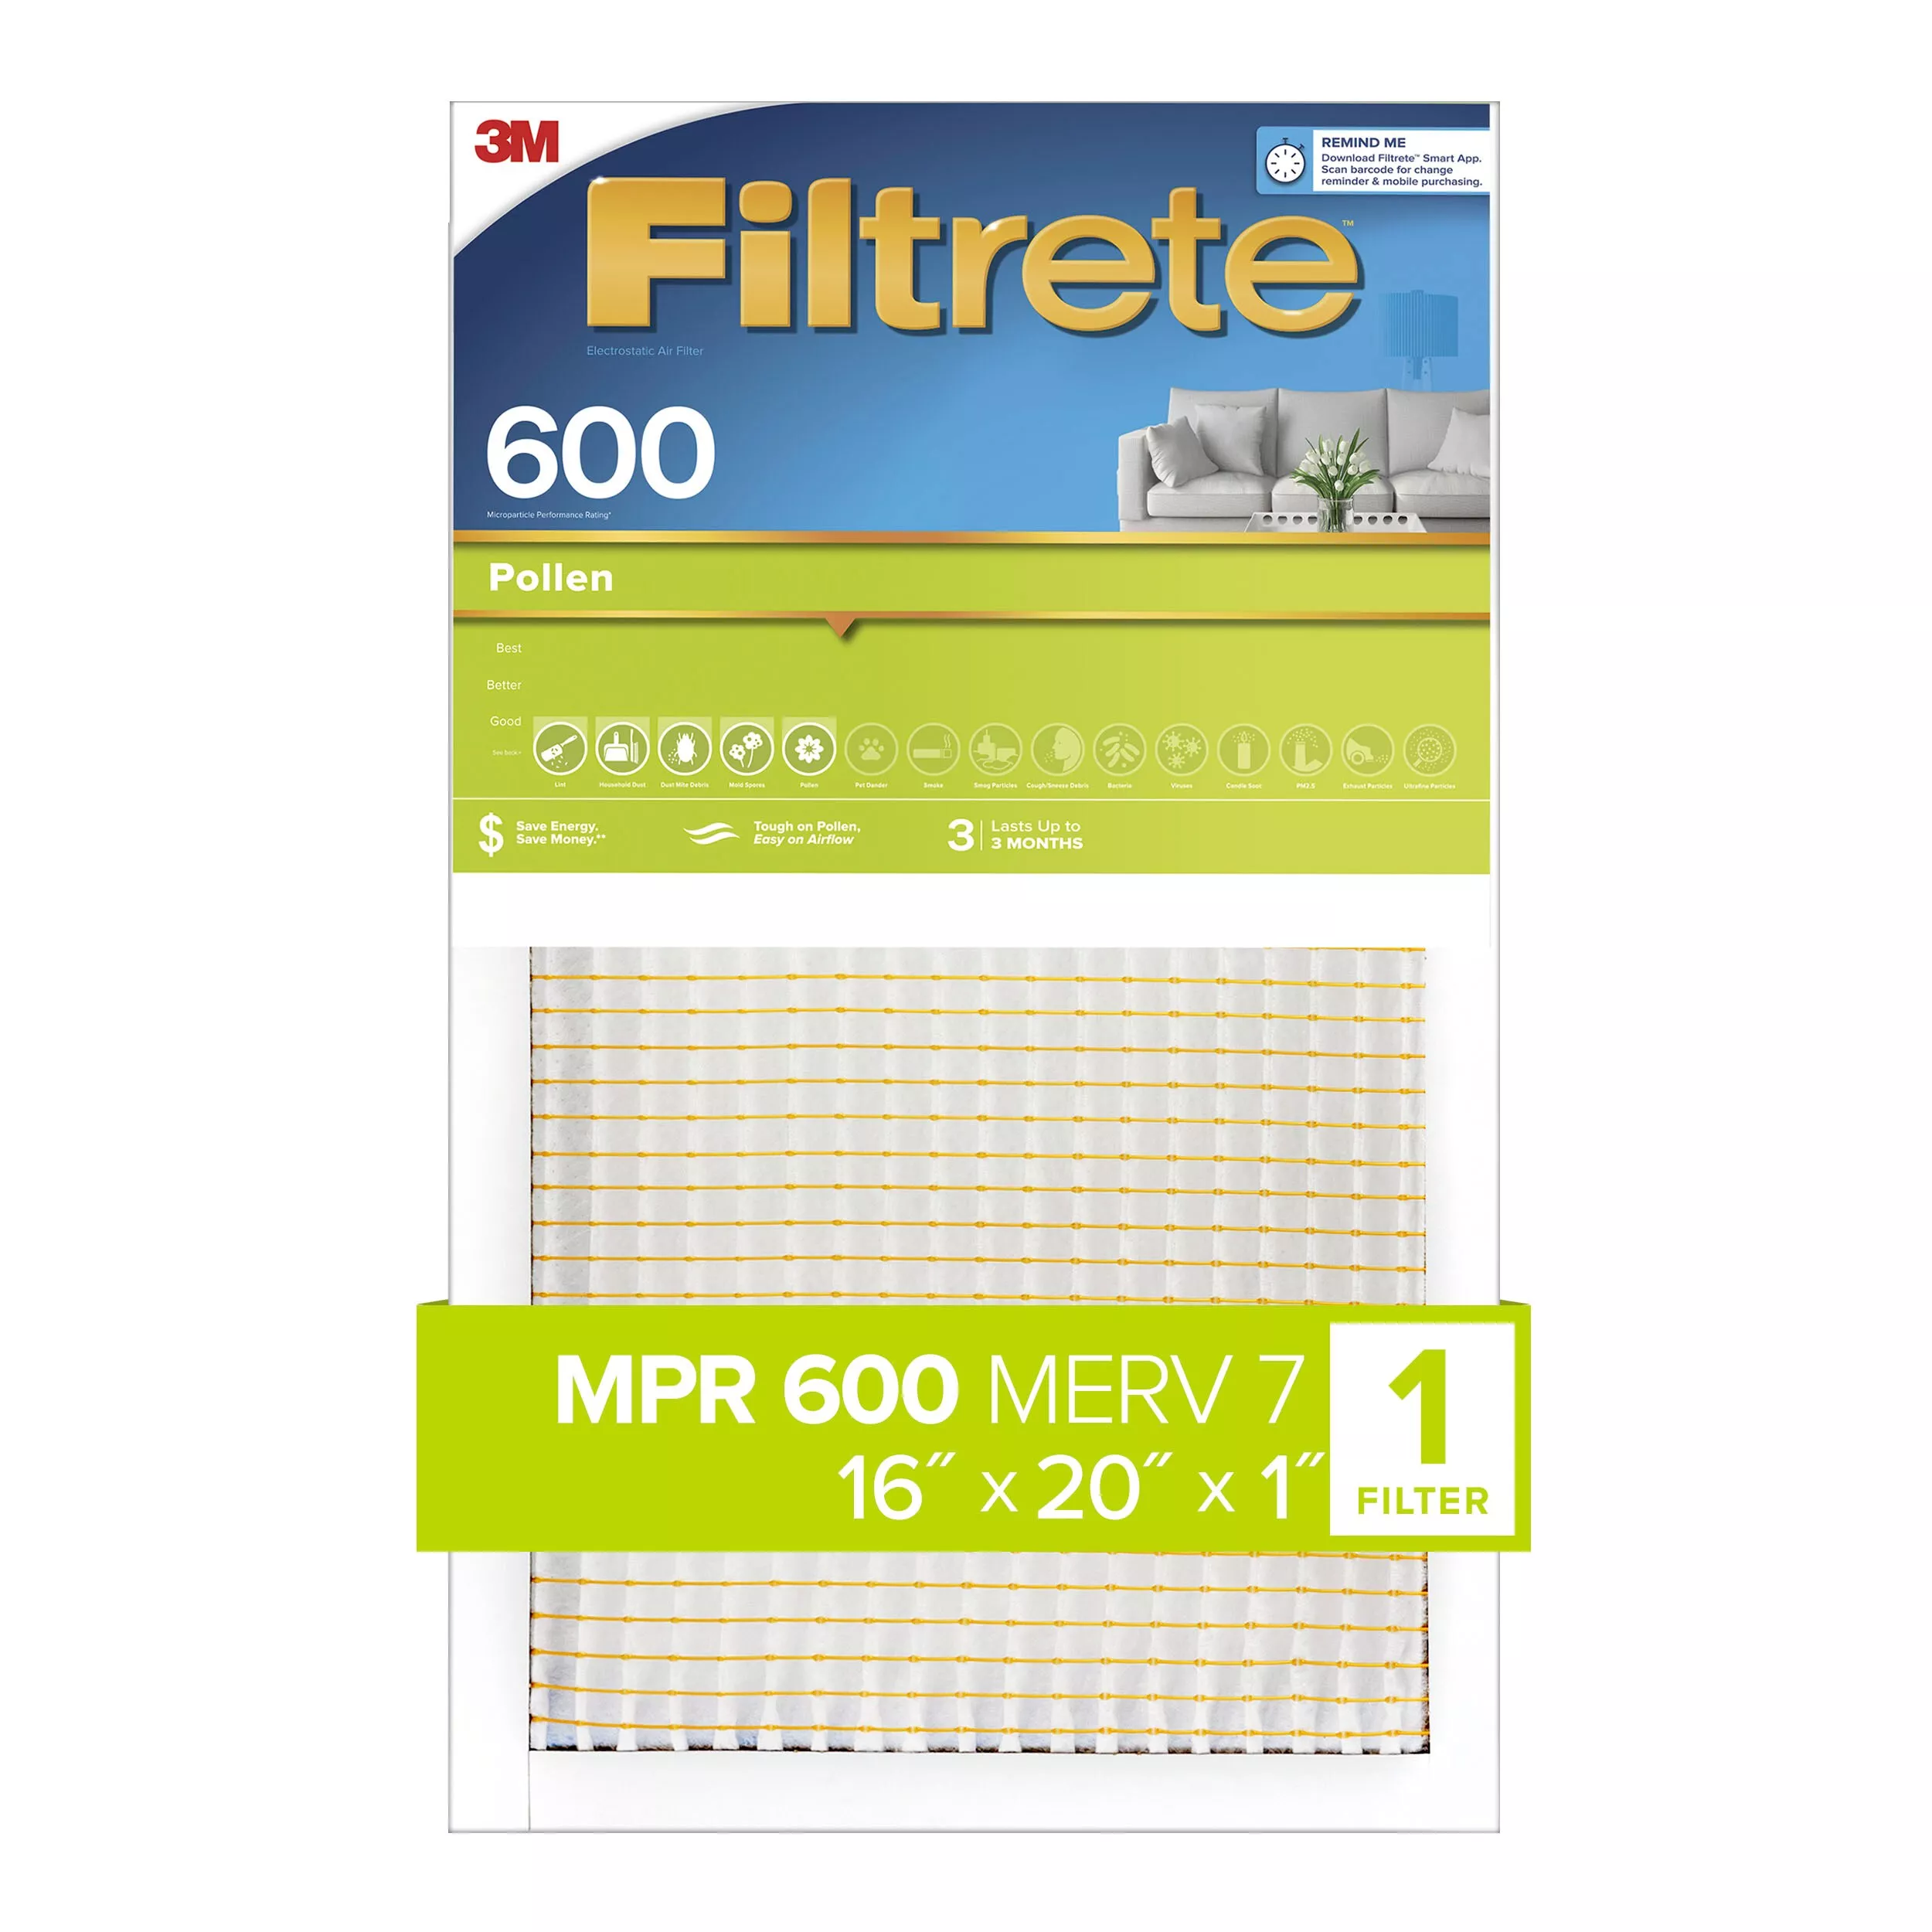 Filtrete™ Pollen Air Filter, 600 MPR, 9830-4, 16 in x 20 in x 1 in (40.6
cm x 50.8 cm x 2.54 cm)